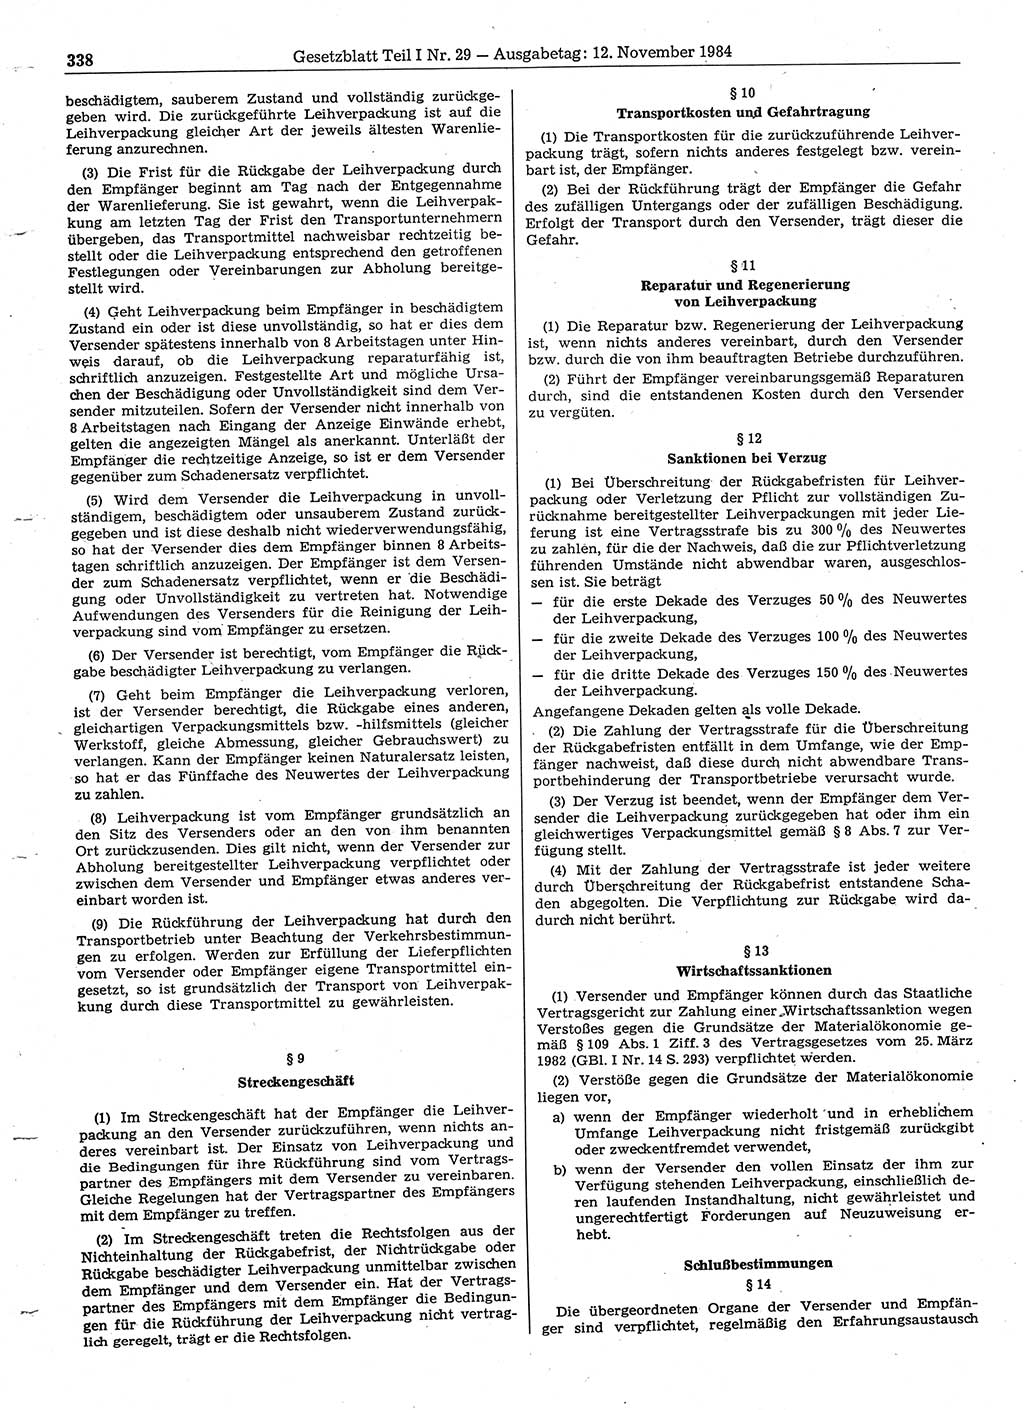 Gesetzblatt (GBl.) der Deutschen Demokratischen Republik (DDR) Teil Ⅰ 1984, Seite 338 (GBl. DDR Ⅰ 1984, S. 338)